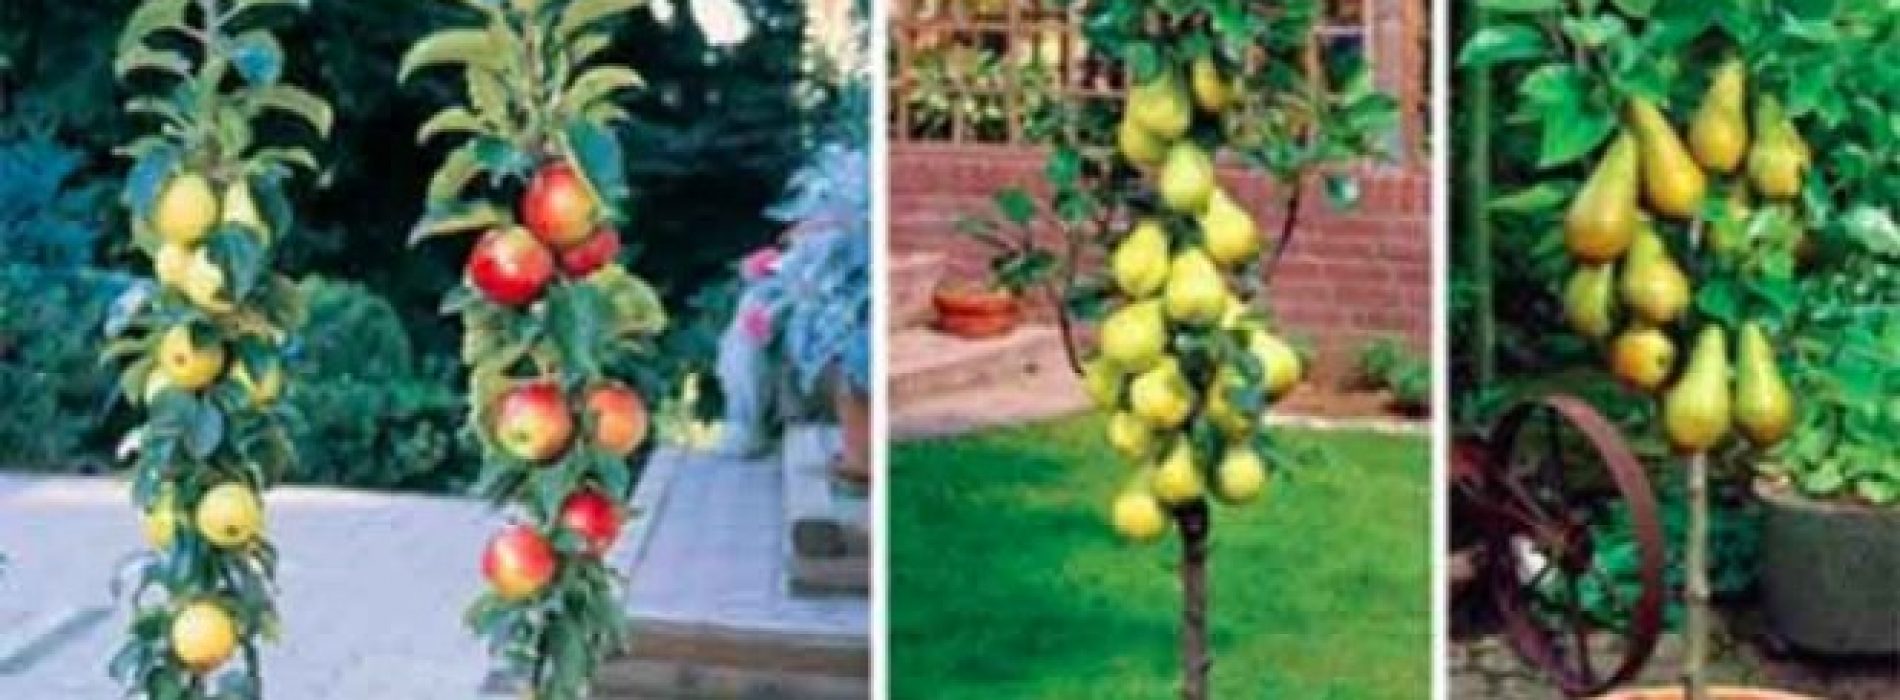 Zuilvormige Fruitbomen: Maak Jouw Eigen Boomgaard met deze geweldige Dwerg Fruitbomen.